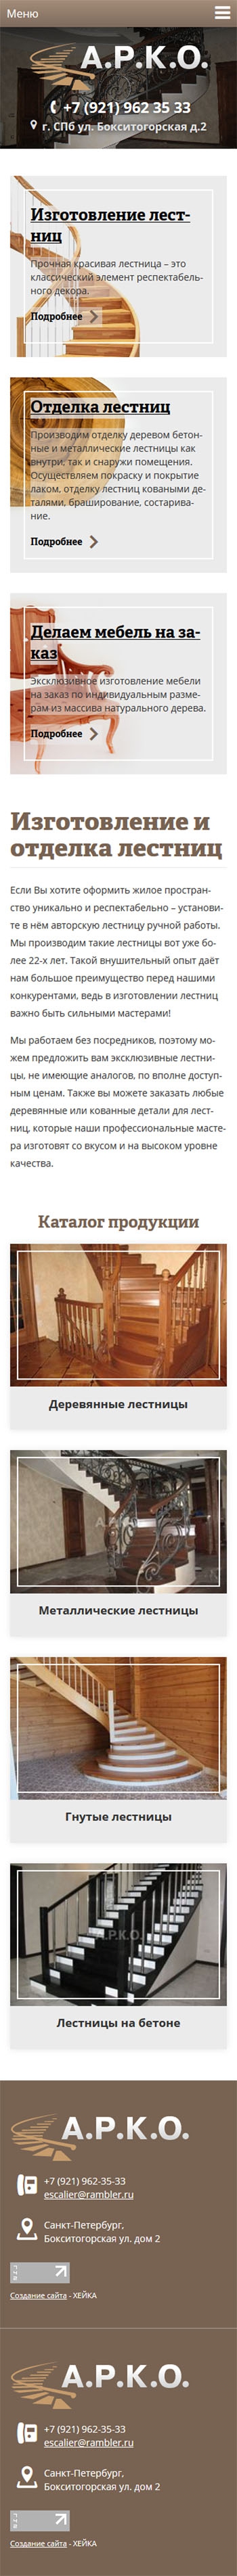 АРКО - производитель лестниц в Санкт-Петербурге